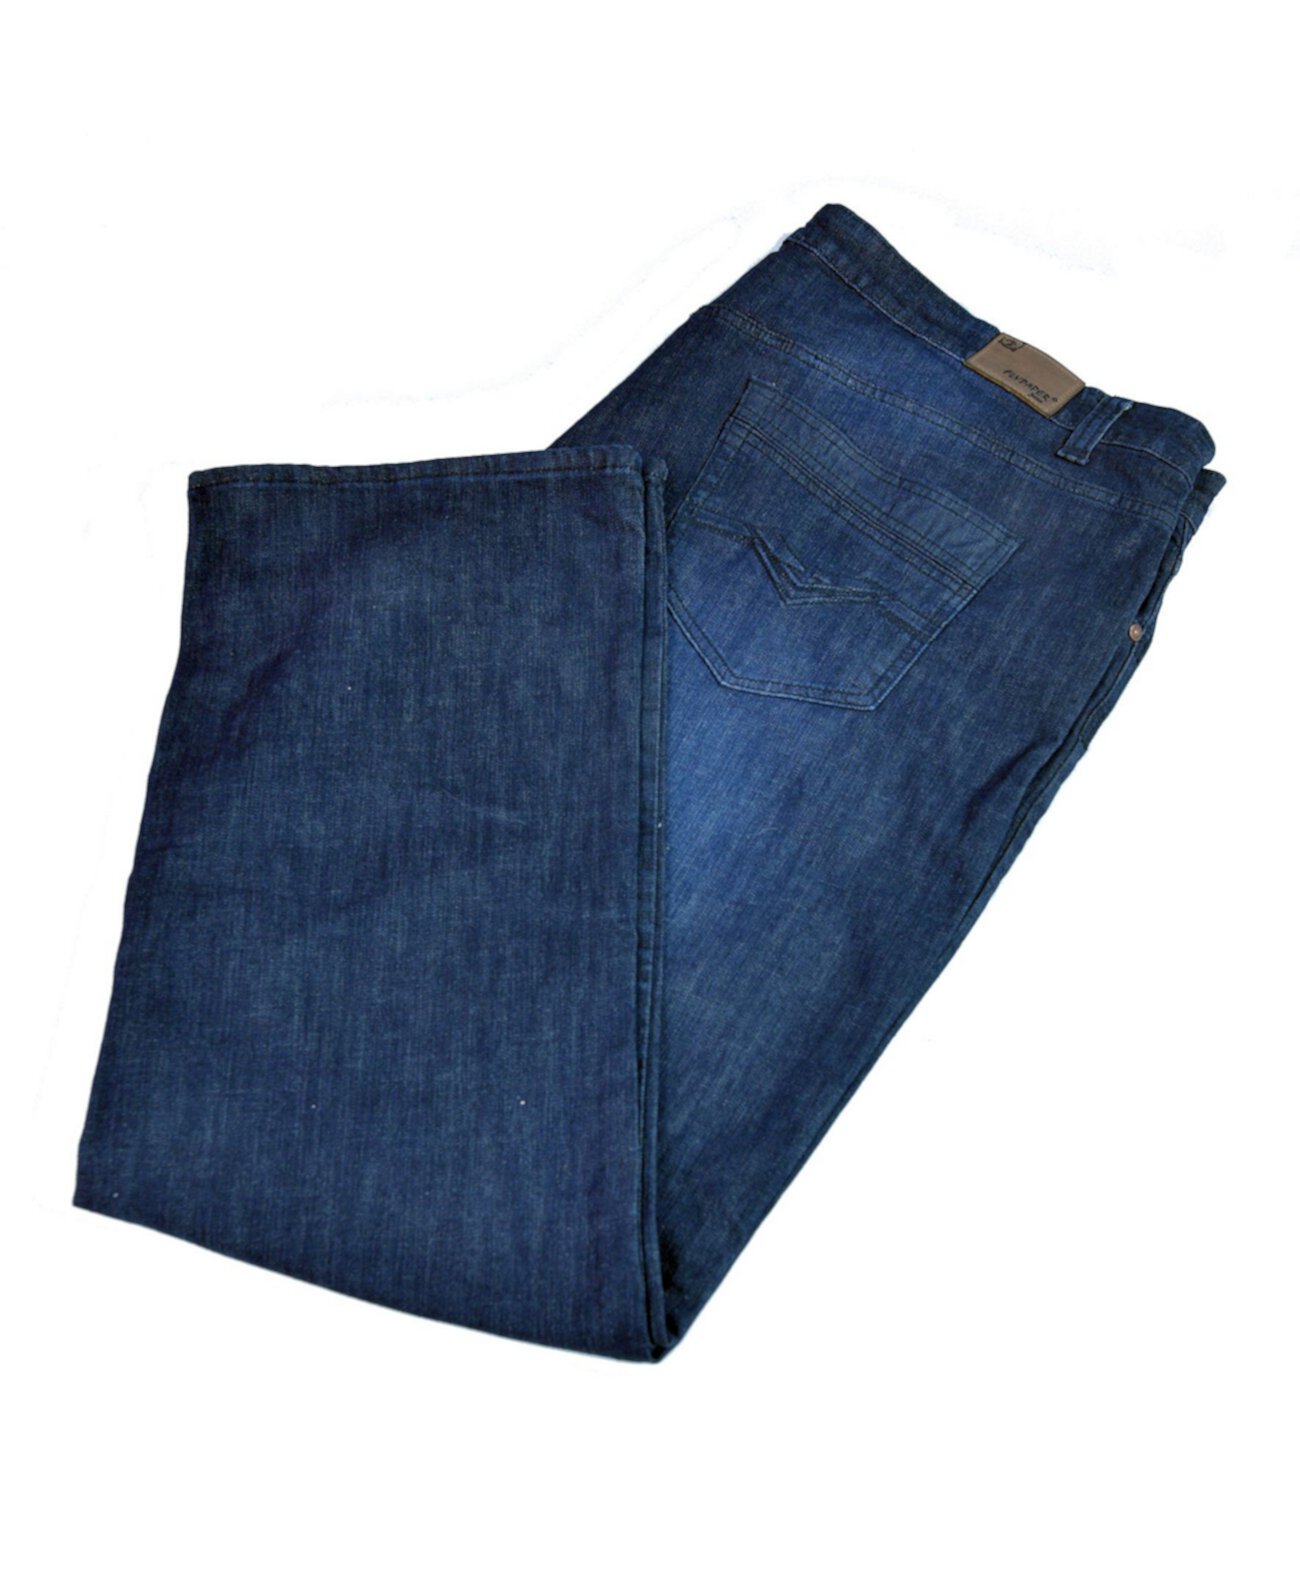 Мужские джинсы Big High Regular Fit с прямыми ногами Flypaper